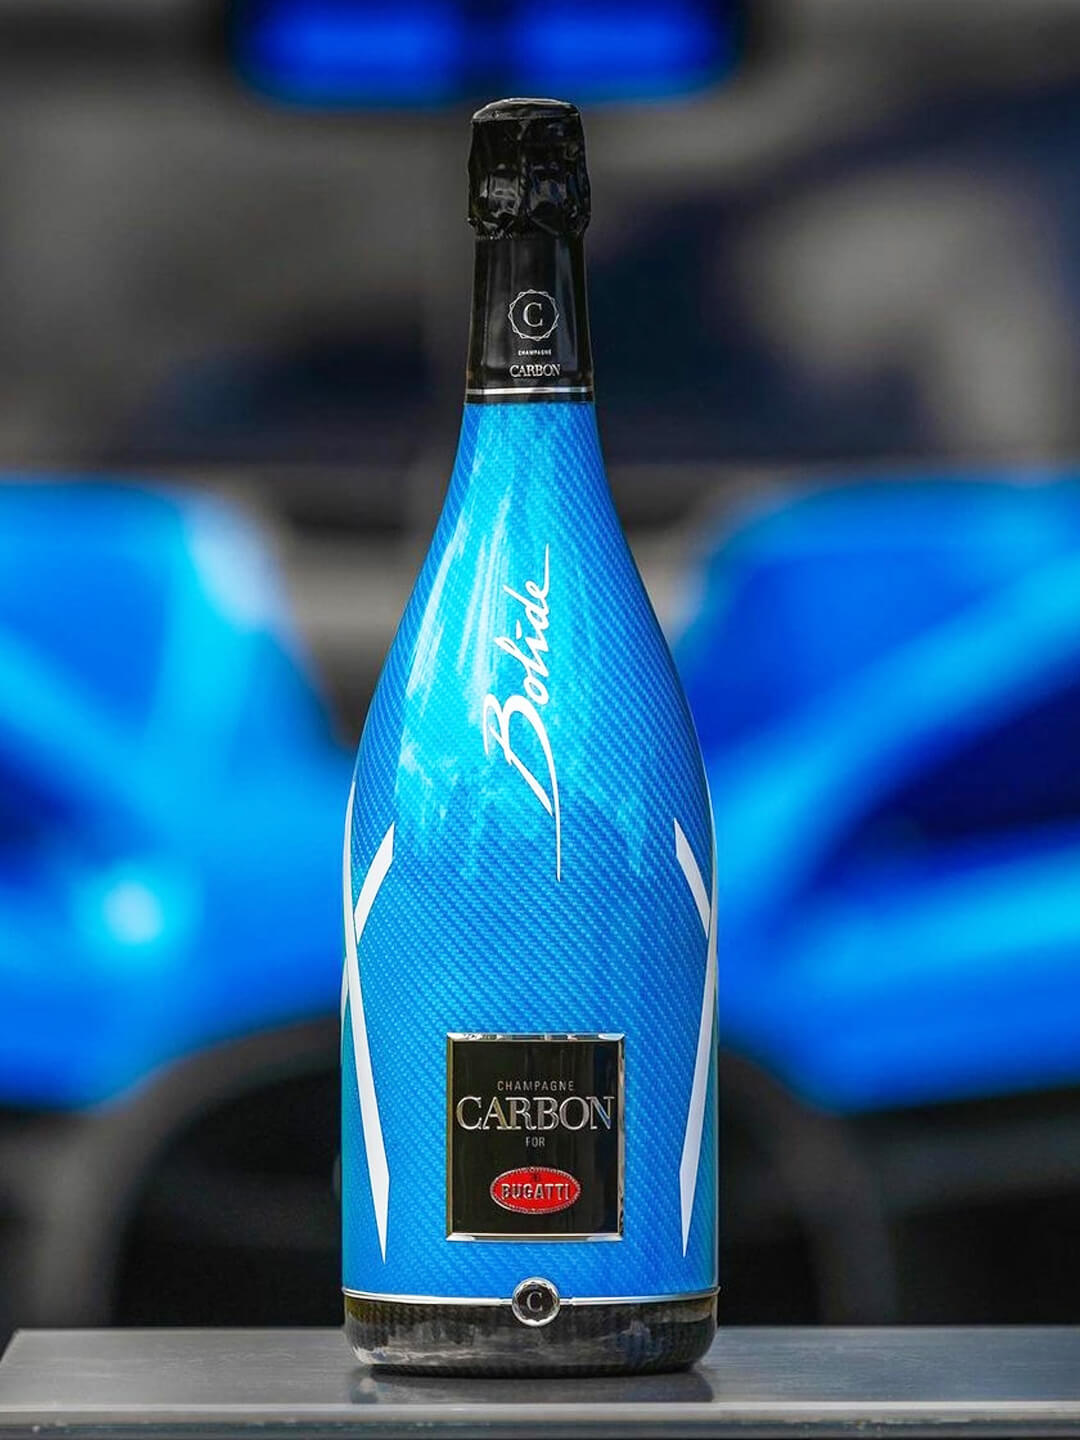 Bugatti Collection – Champagne Carbon USA